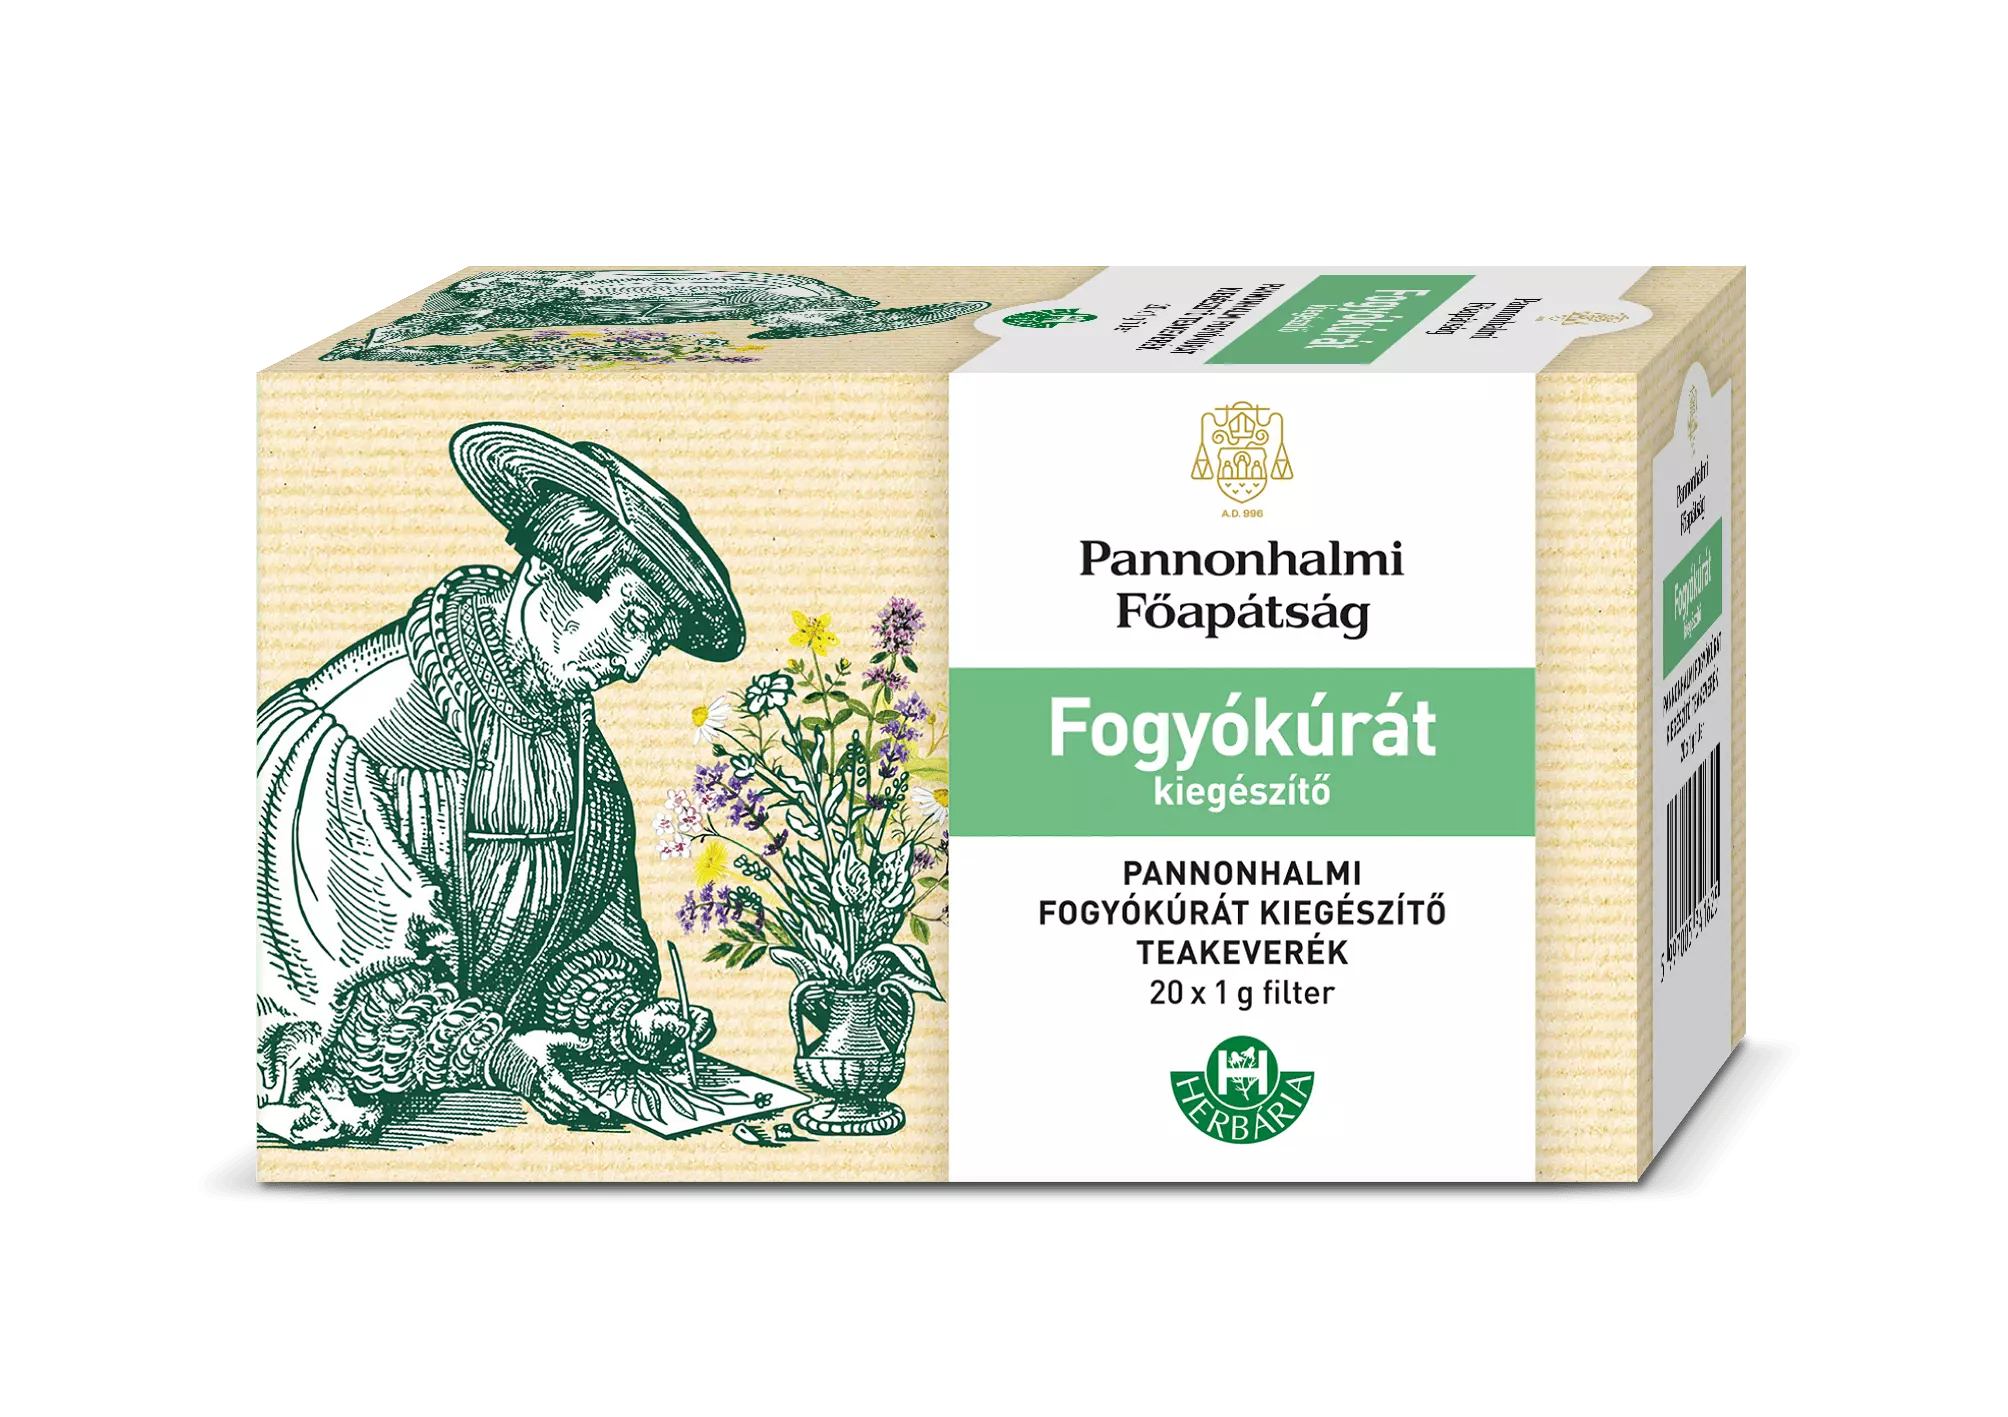 Herbária Pannonhalmi Fogyókúrát kiegészítő teakeverék